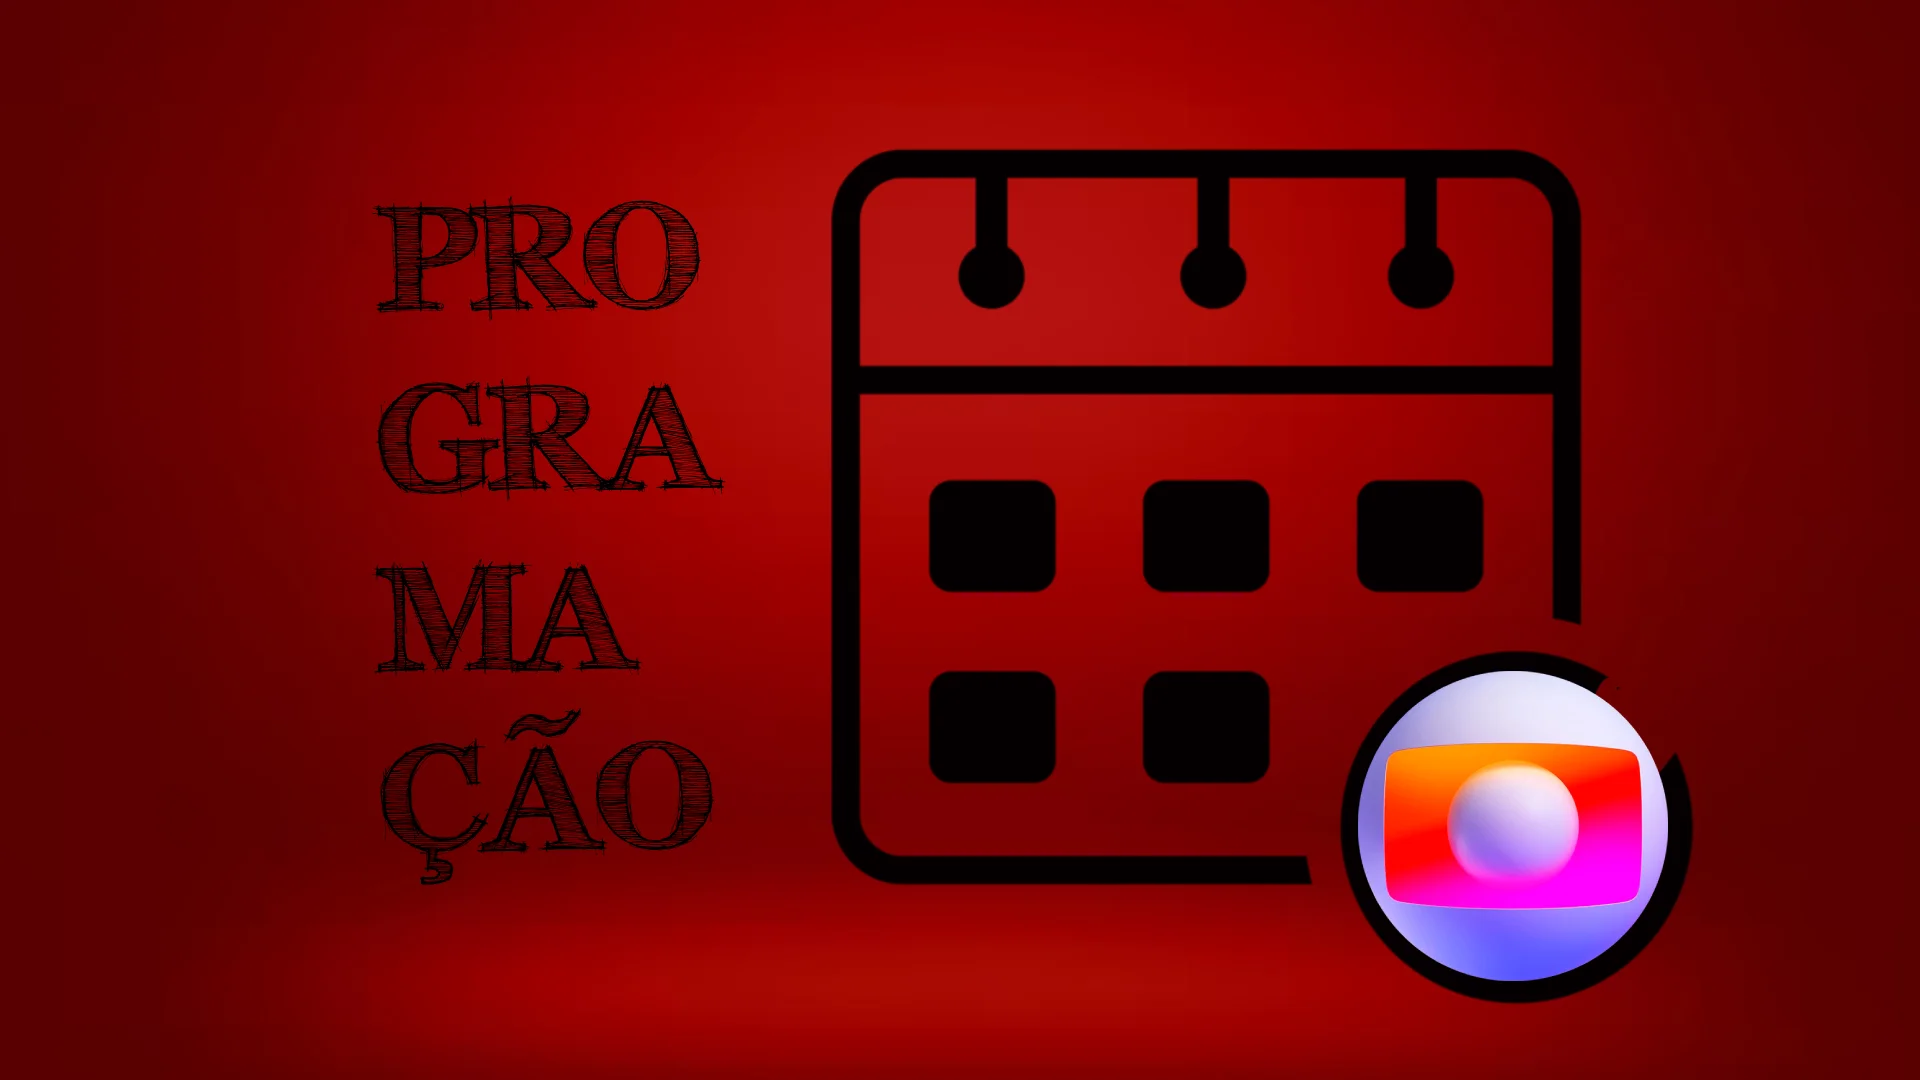 Programação da Globo